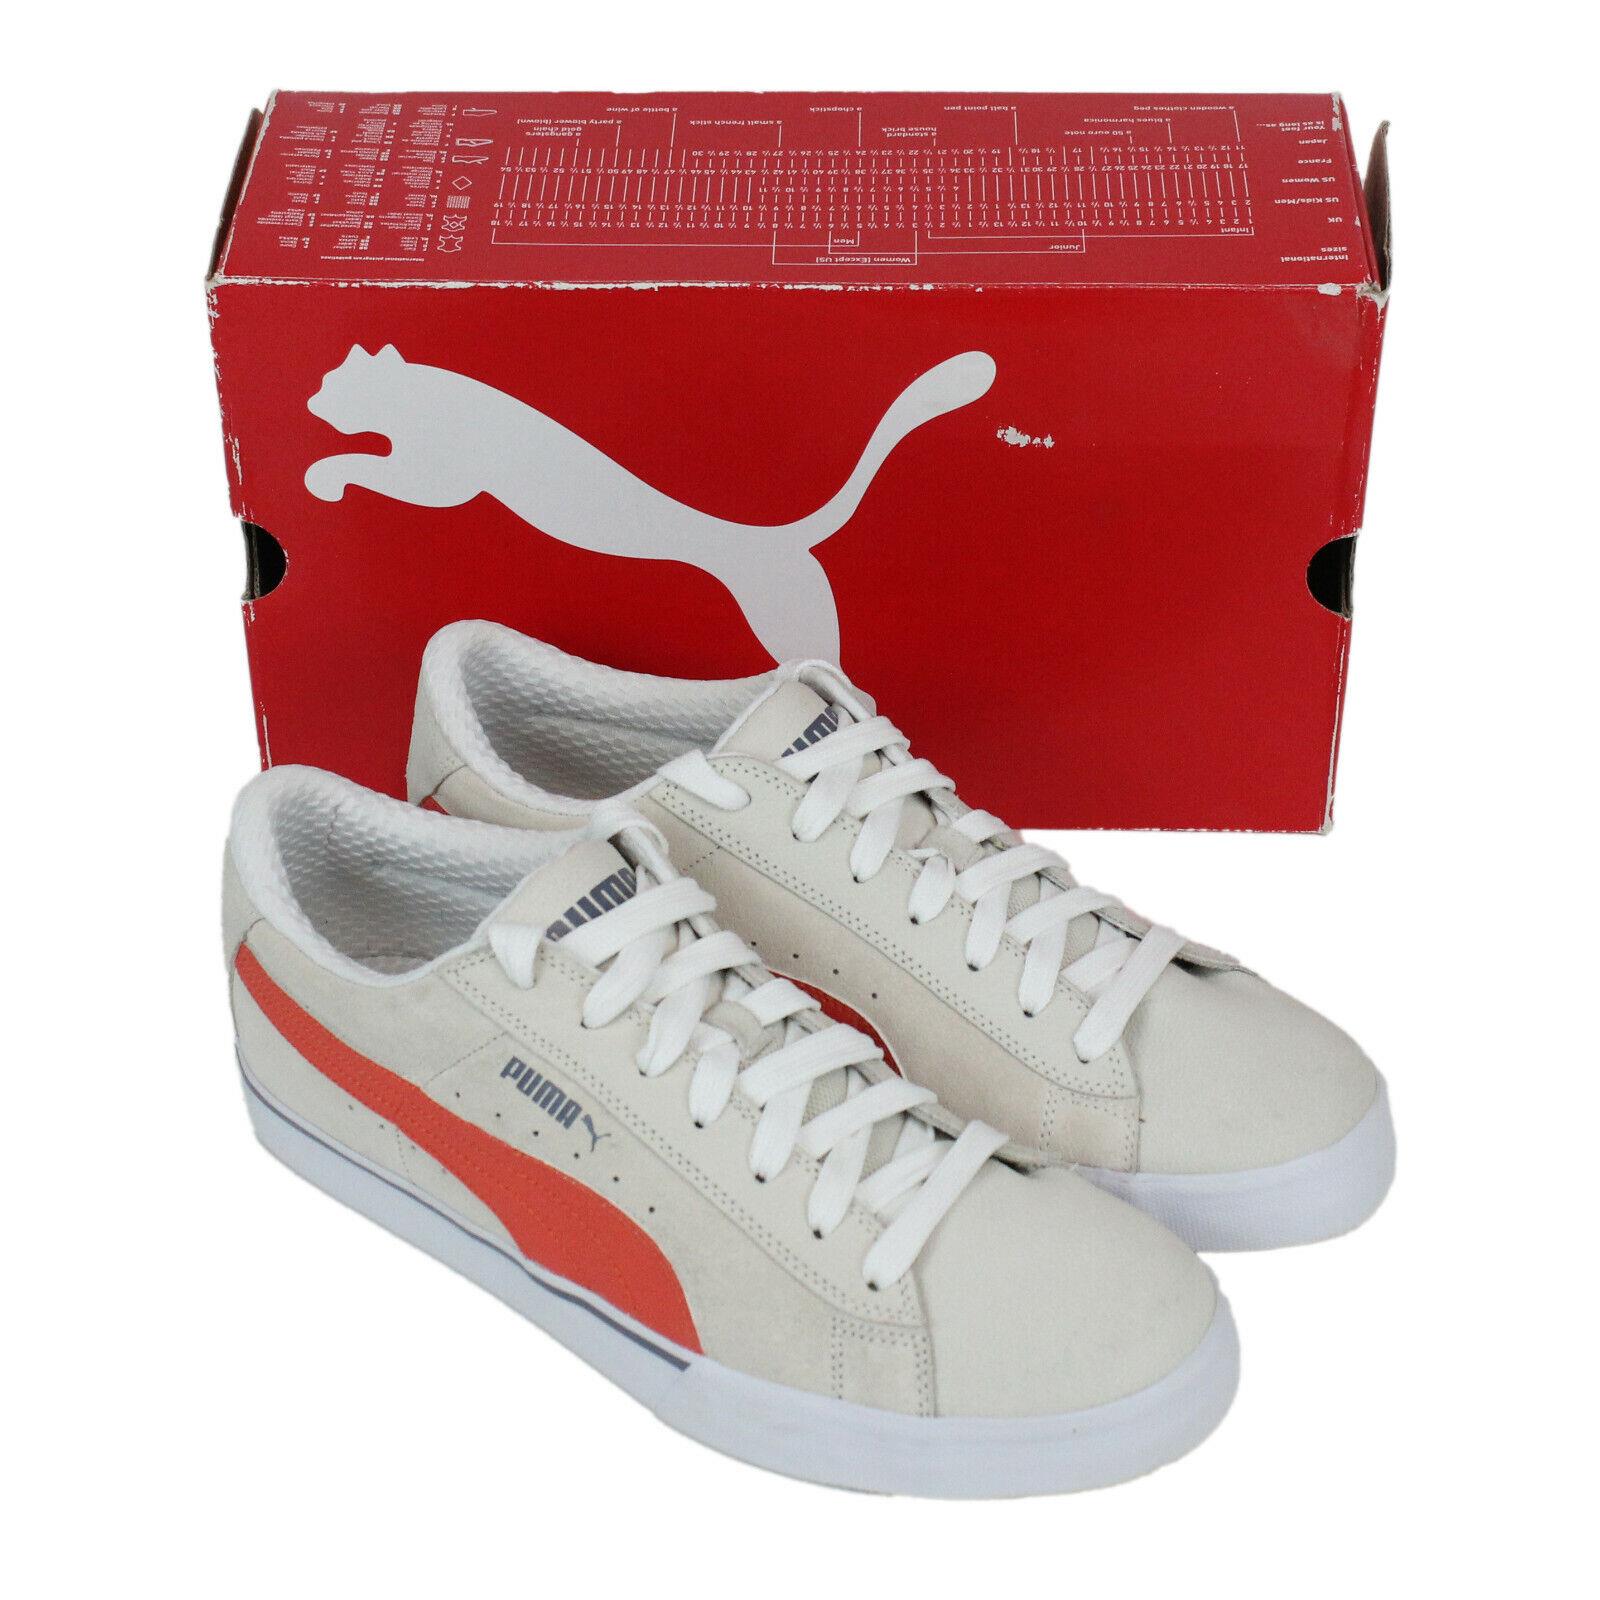 Puma S Low City Shoe Birch Cherry Tomato White 353850 US 11.5 Classic Suede Rare